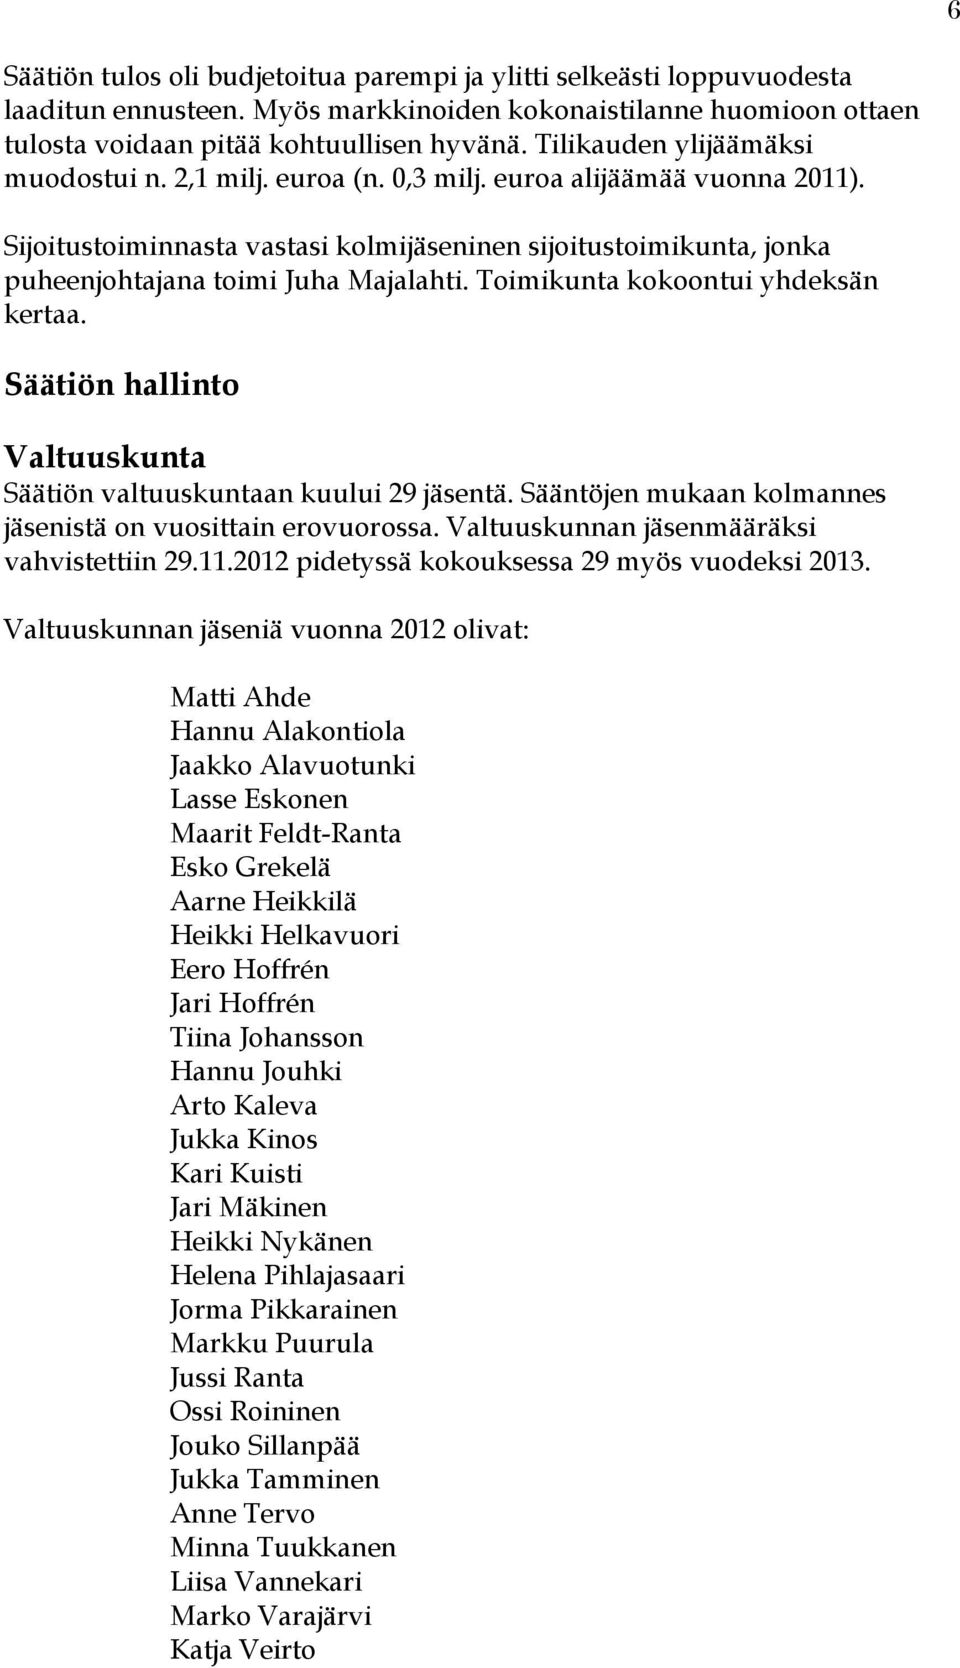 Sijoitustoiminnasta vastasi kolmijäseninen sijoitustoimikunta, jonka puheenjohtajana toimi Juha Majalahti. Toimikunta kokoontui yhdeksän kertaa.